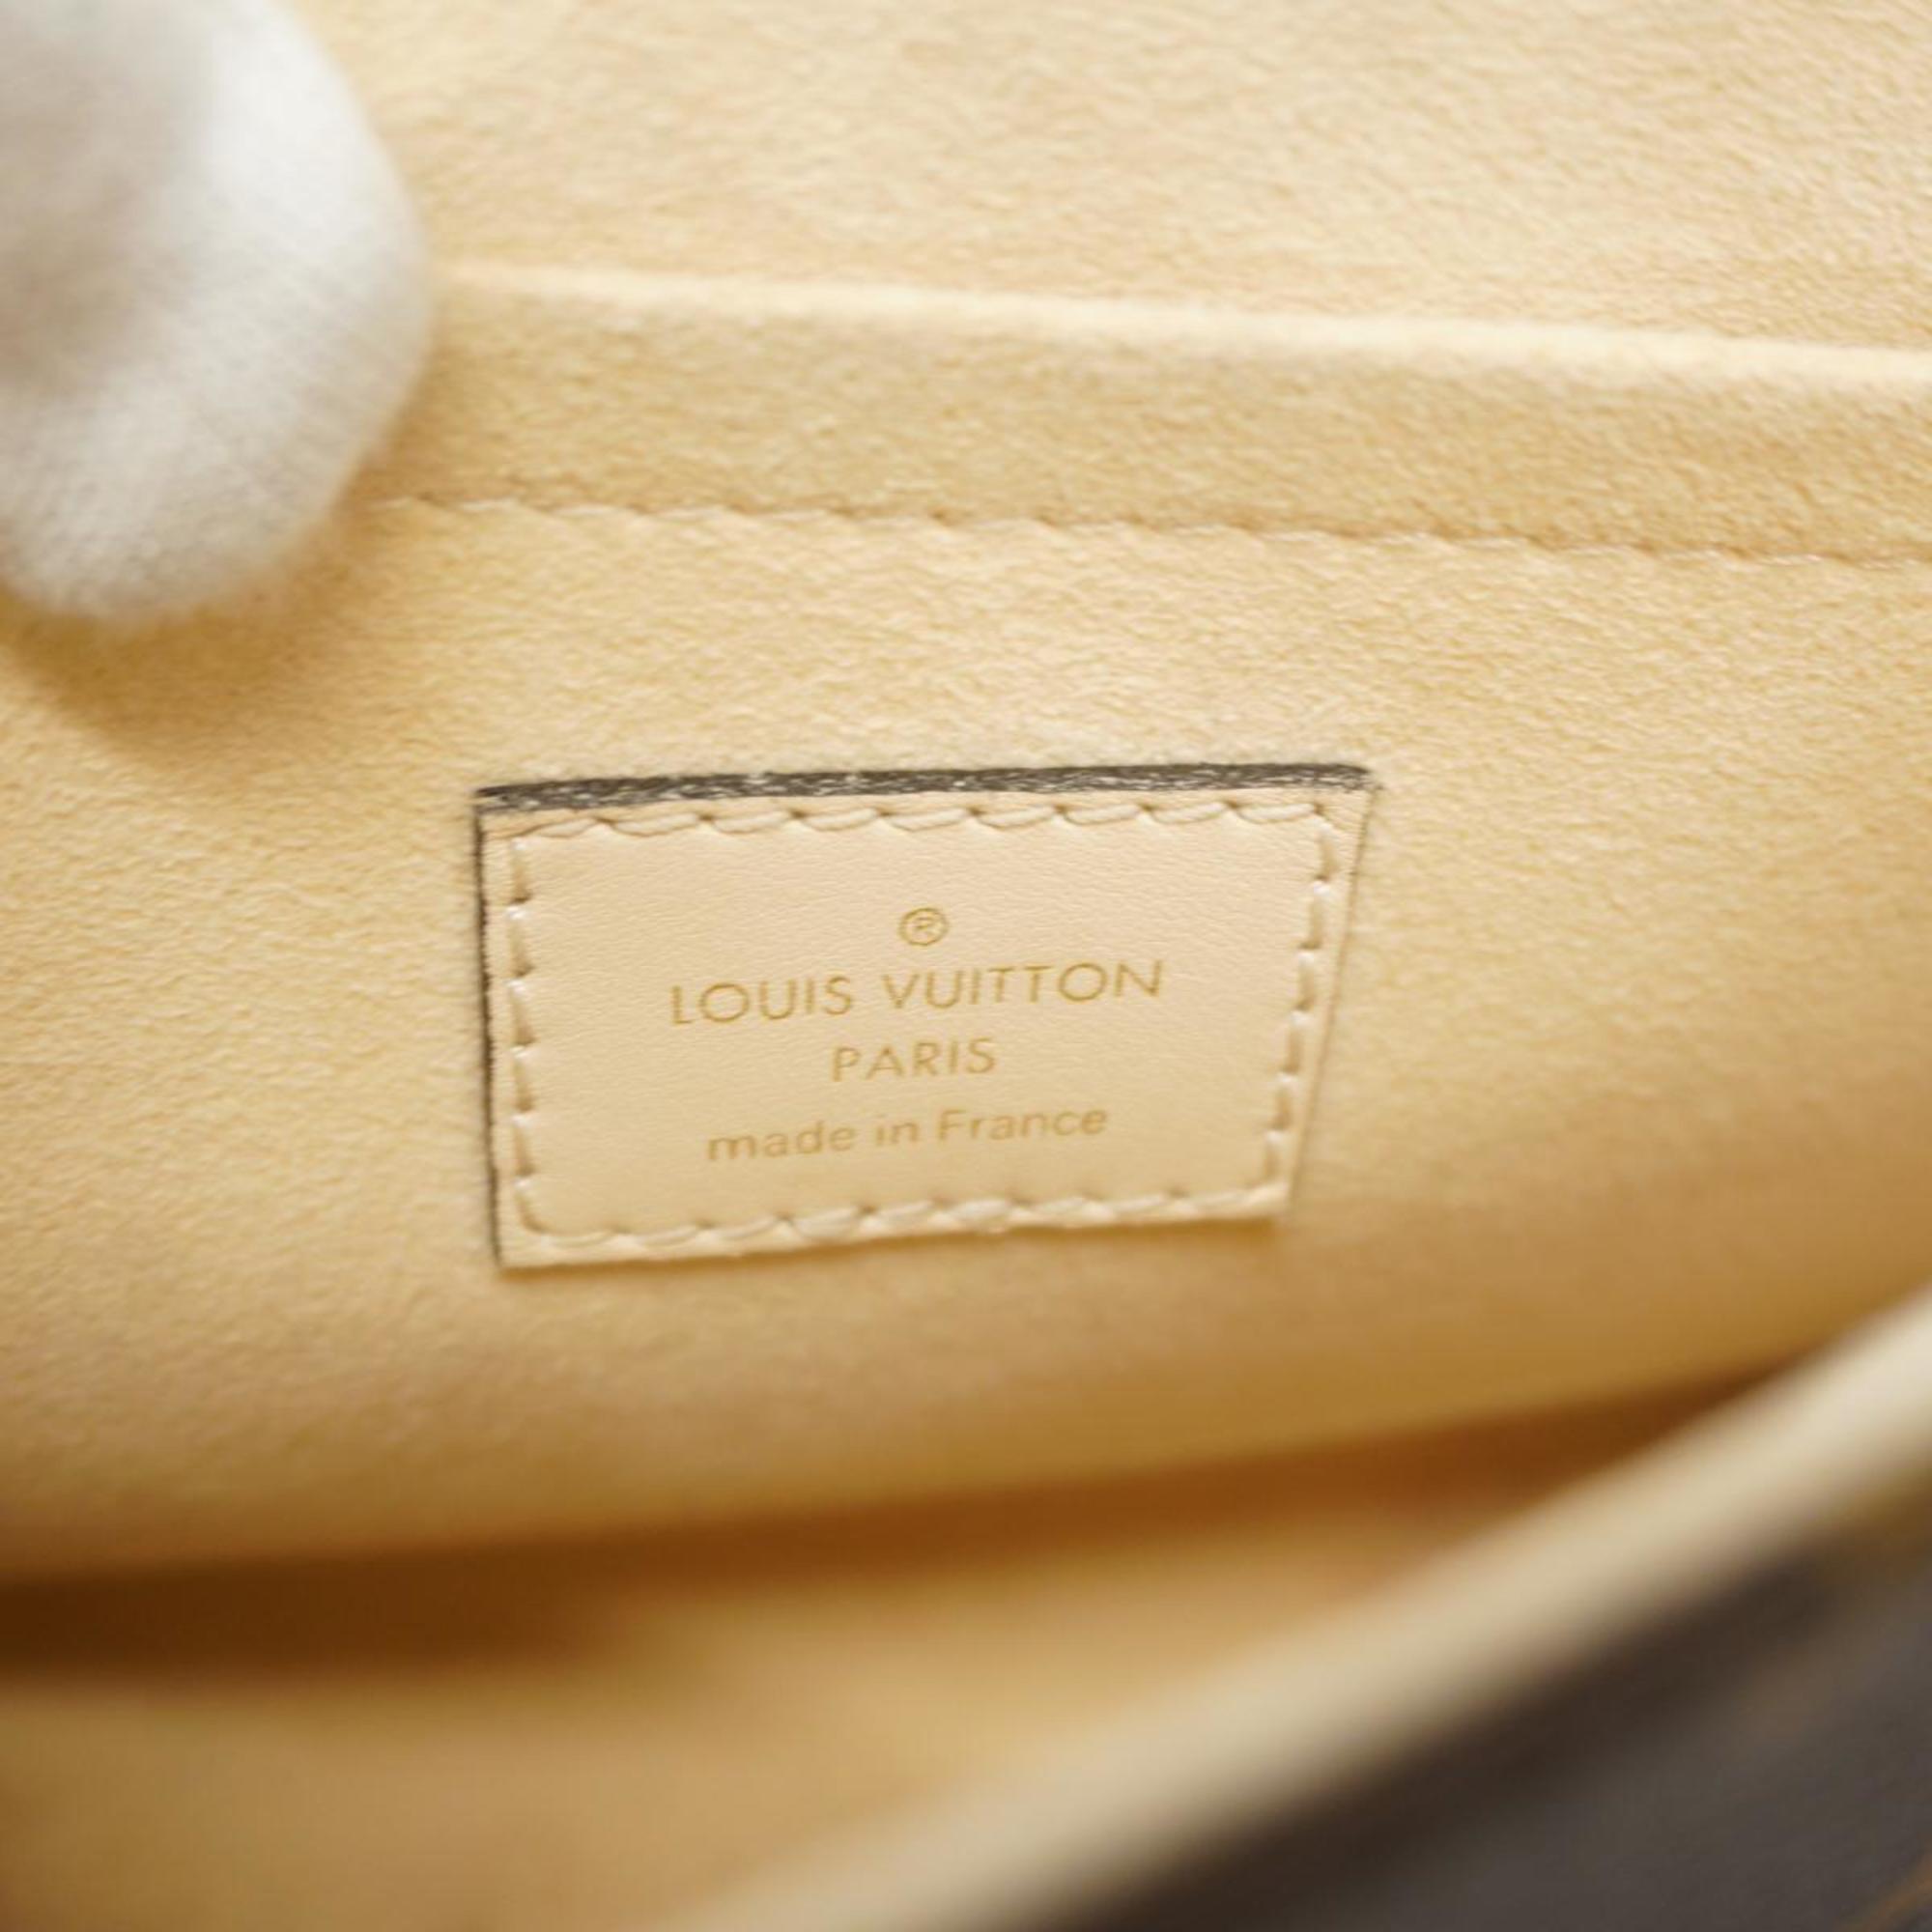 ルイ・ヴィトン(Louis Vuitton) ルイ・ヴィトン ハンドバッグ モノグラム ロッキーBB M44653 クレームレディース